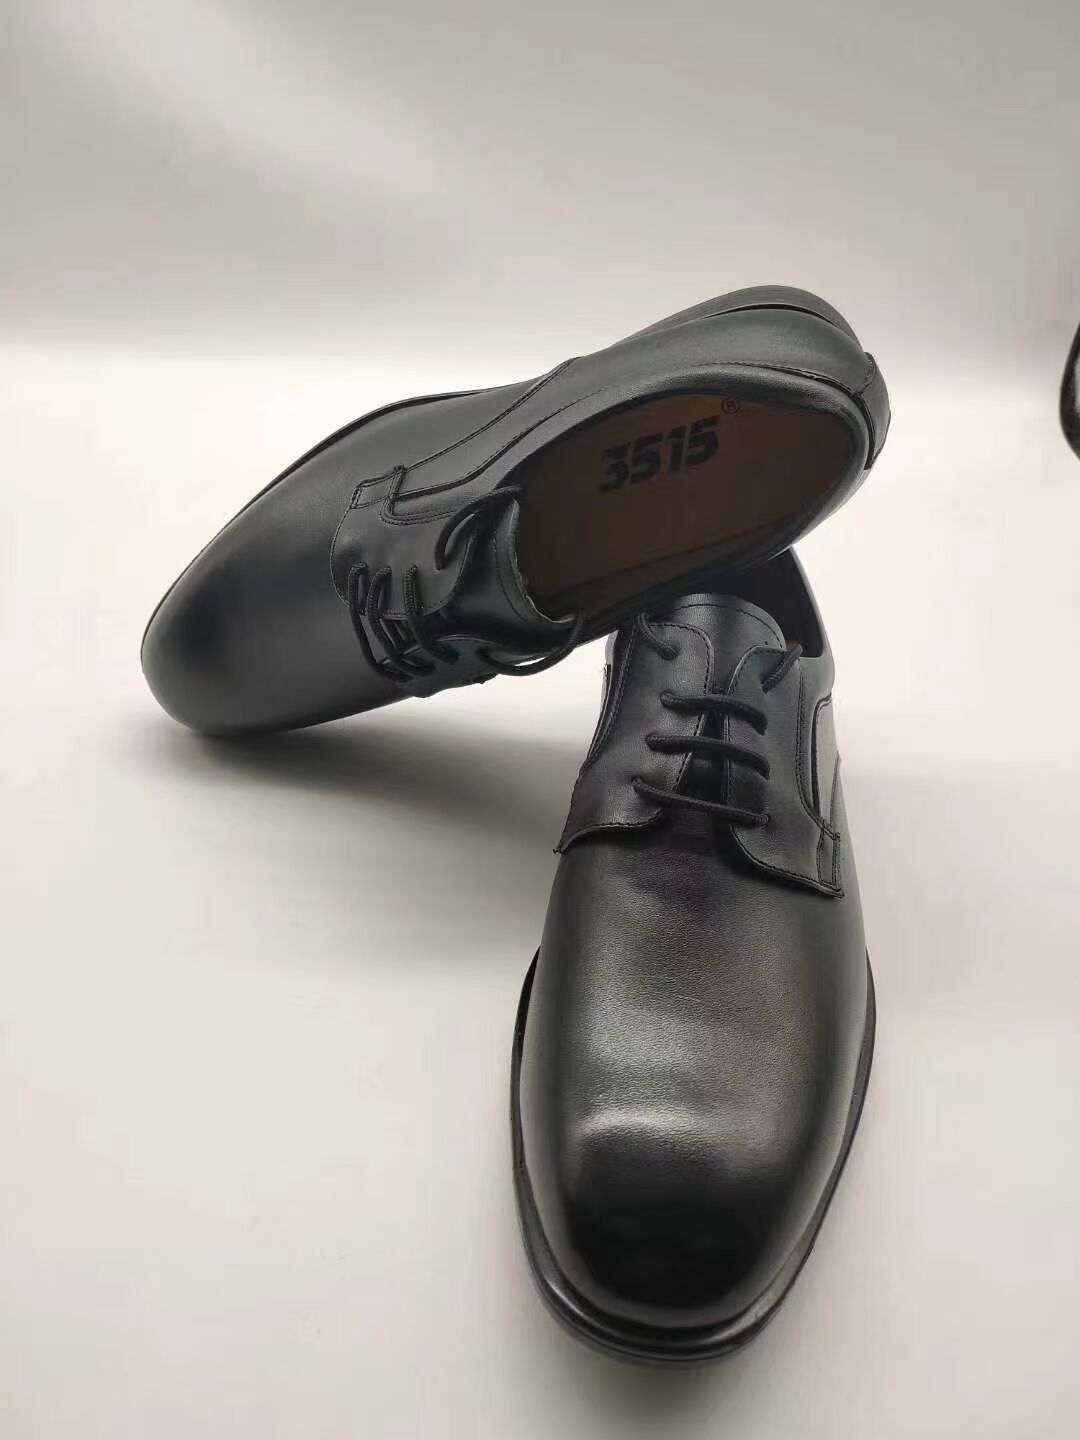 2018款警用单皮鞋图片